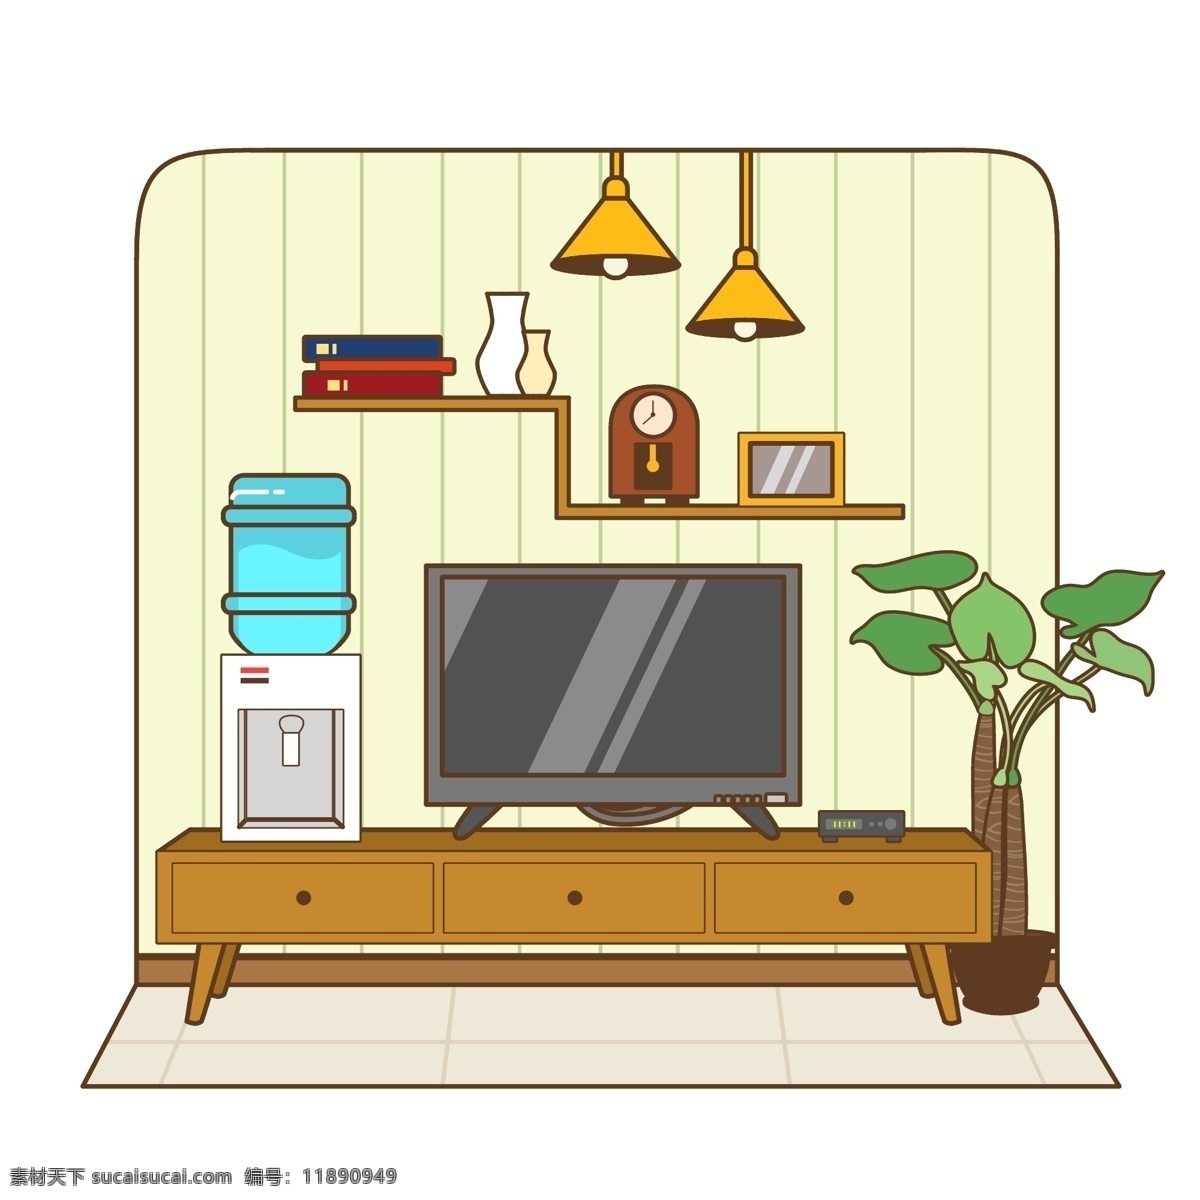 客厅 用品 日用品 用具 生活 家庭 电视 装饰 生活用具 电视柜 饮水机